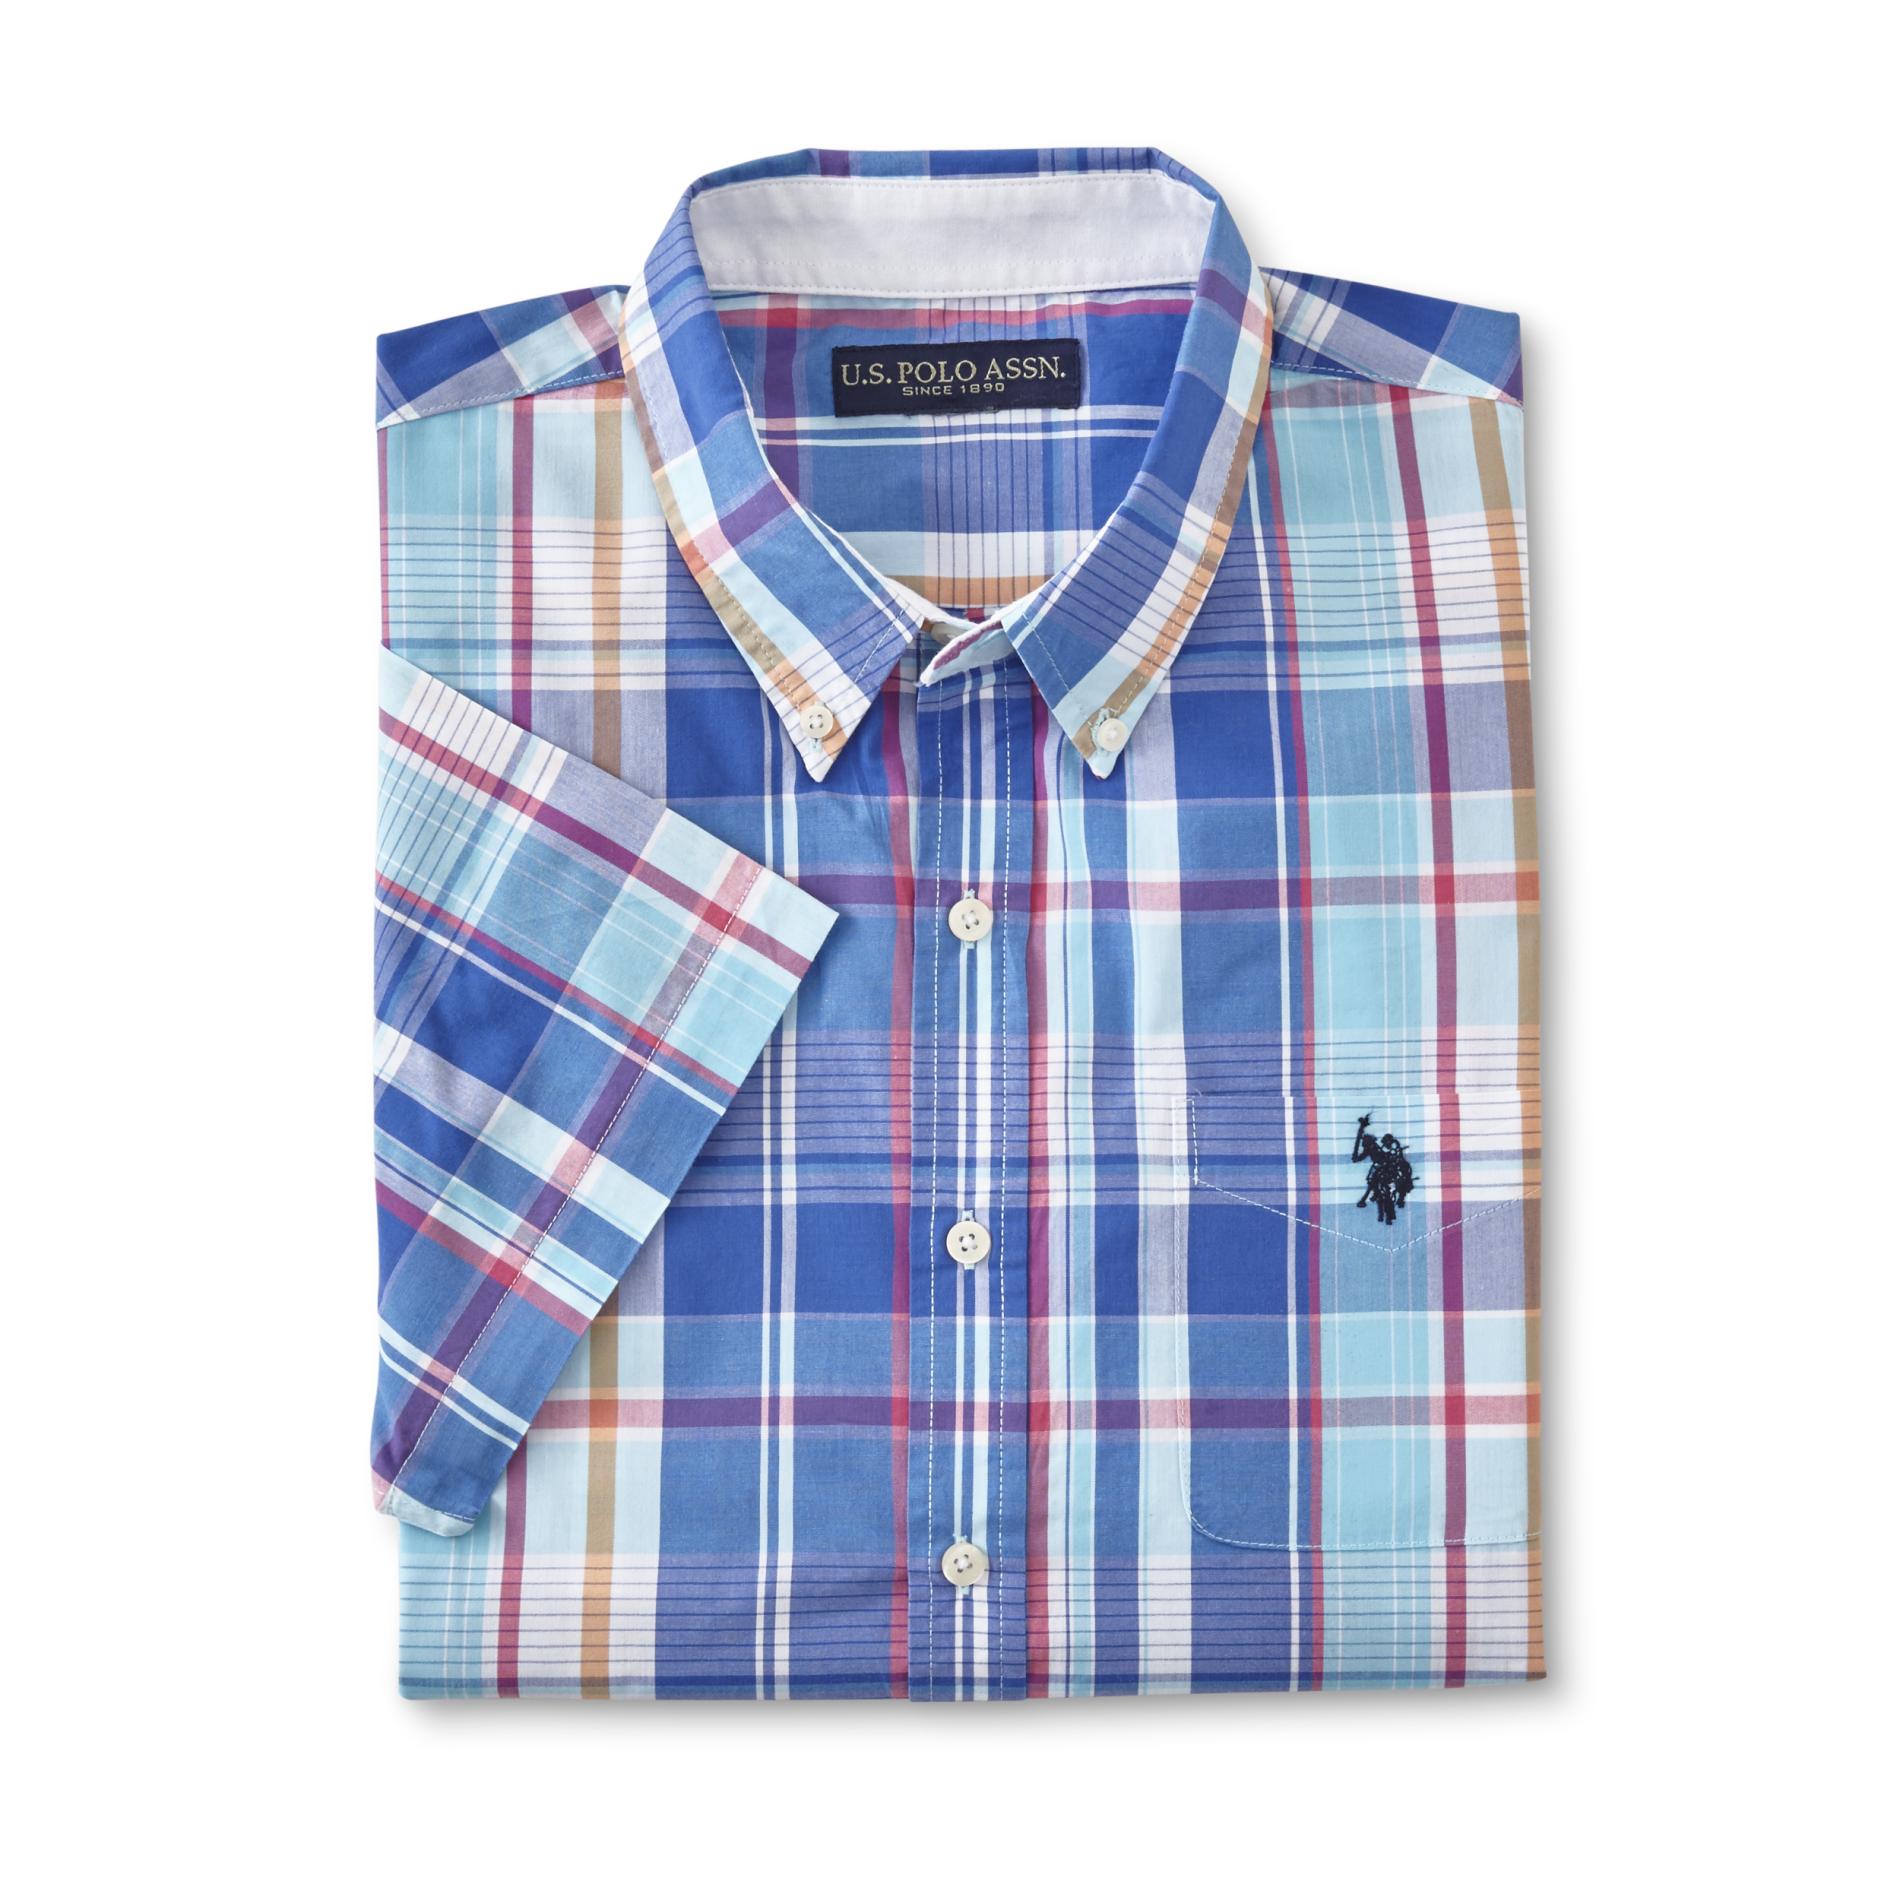 U.S. Polo Assn. Men's Short-Sleeve Button-Front Shirt - Plaid